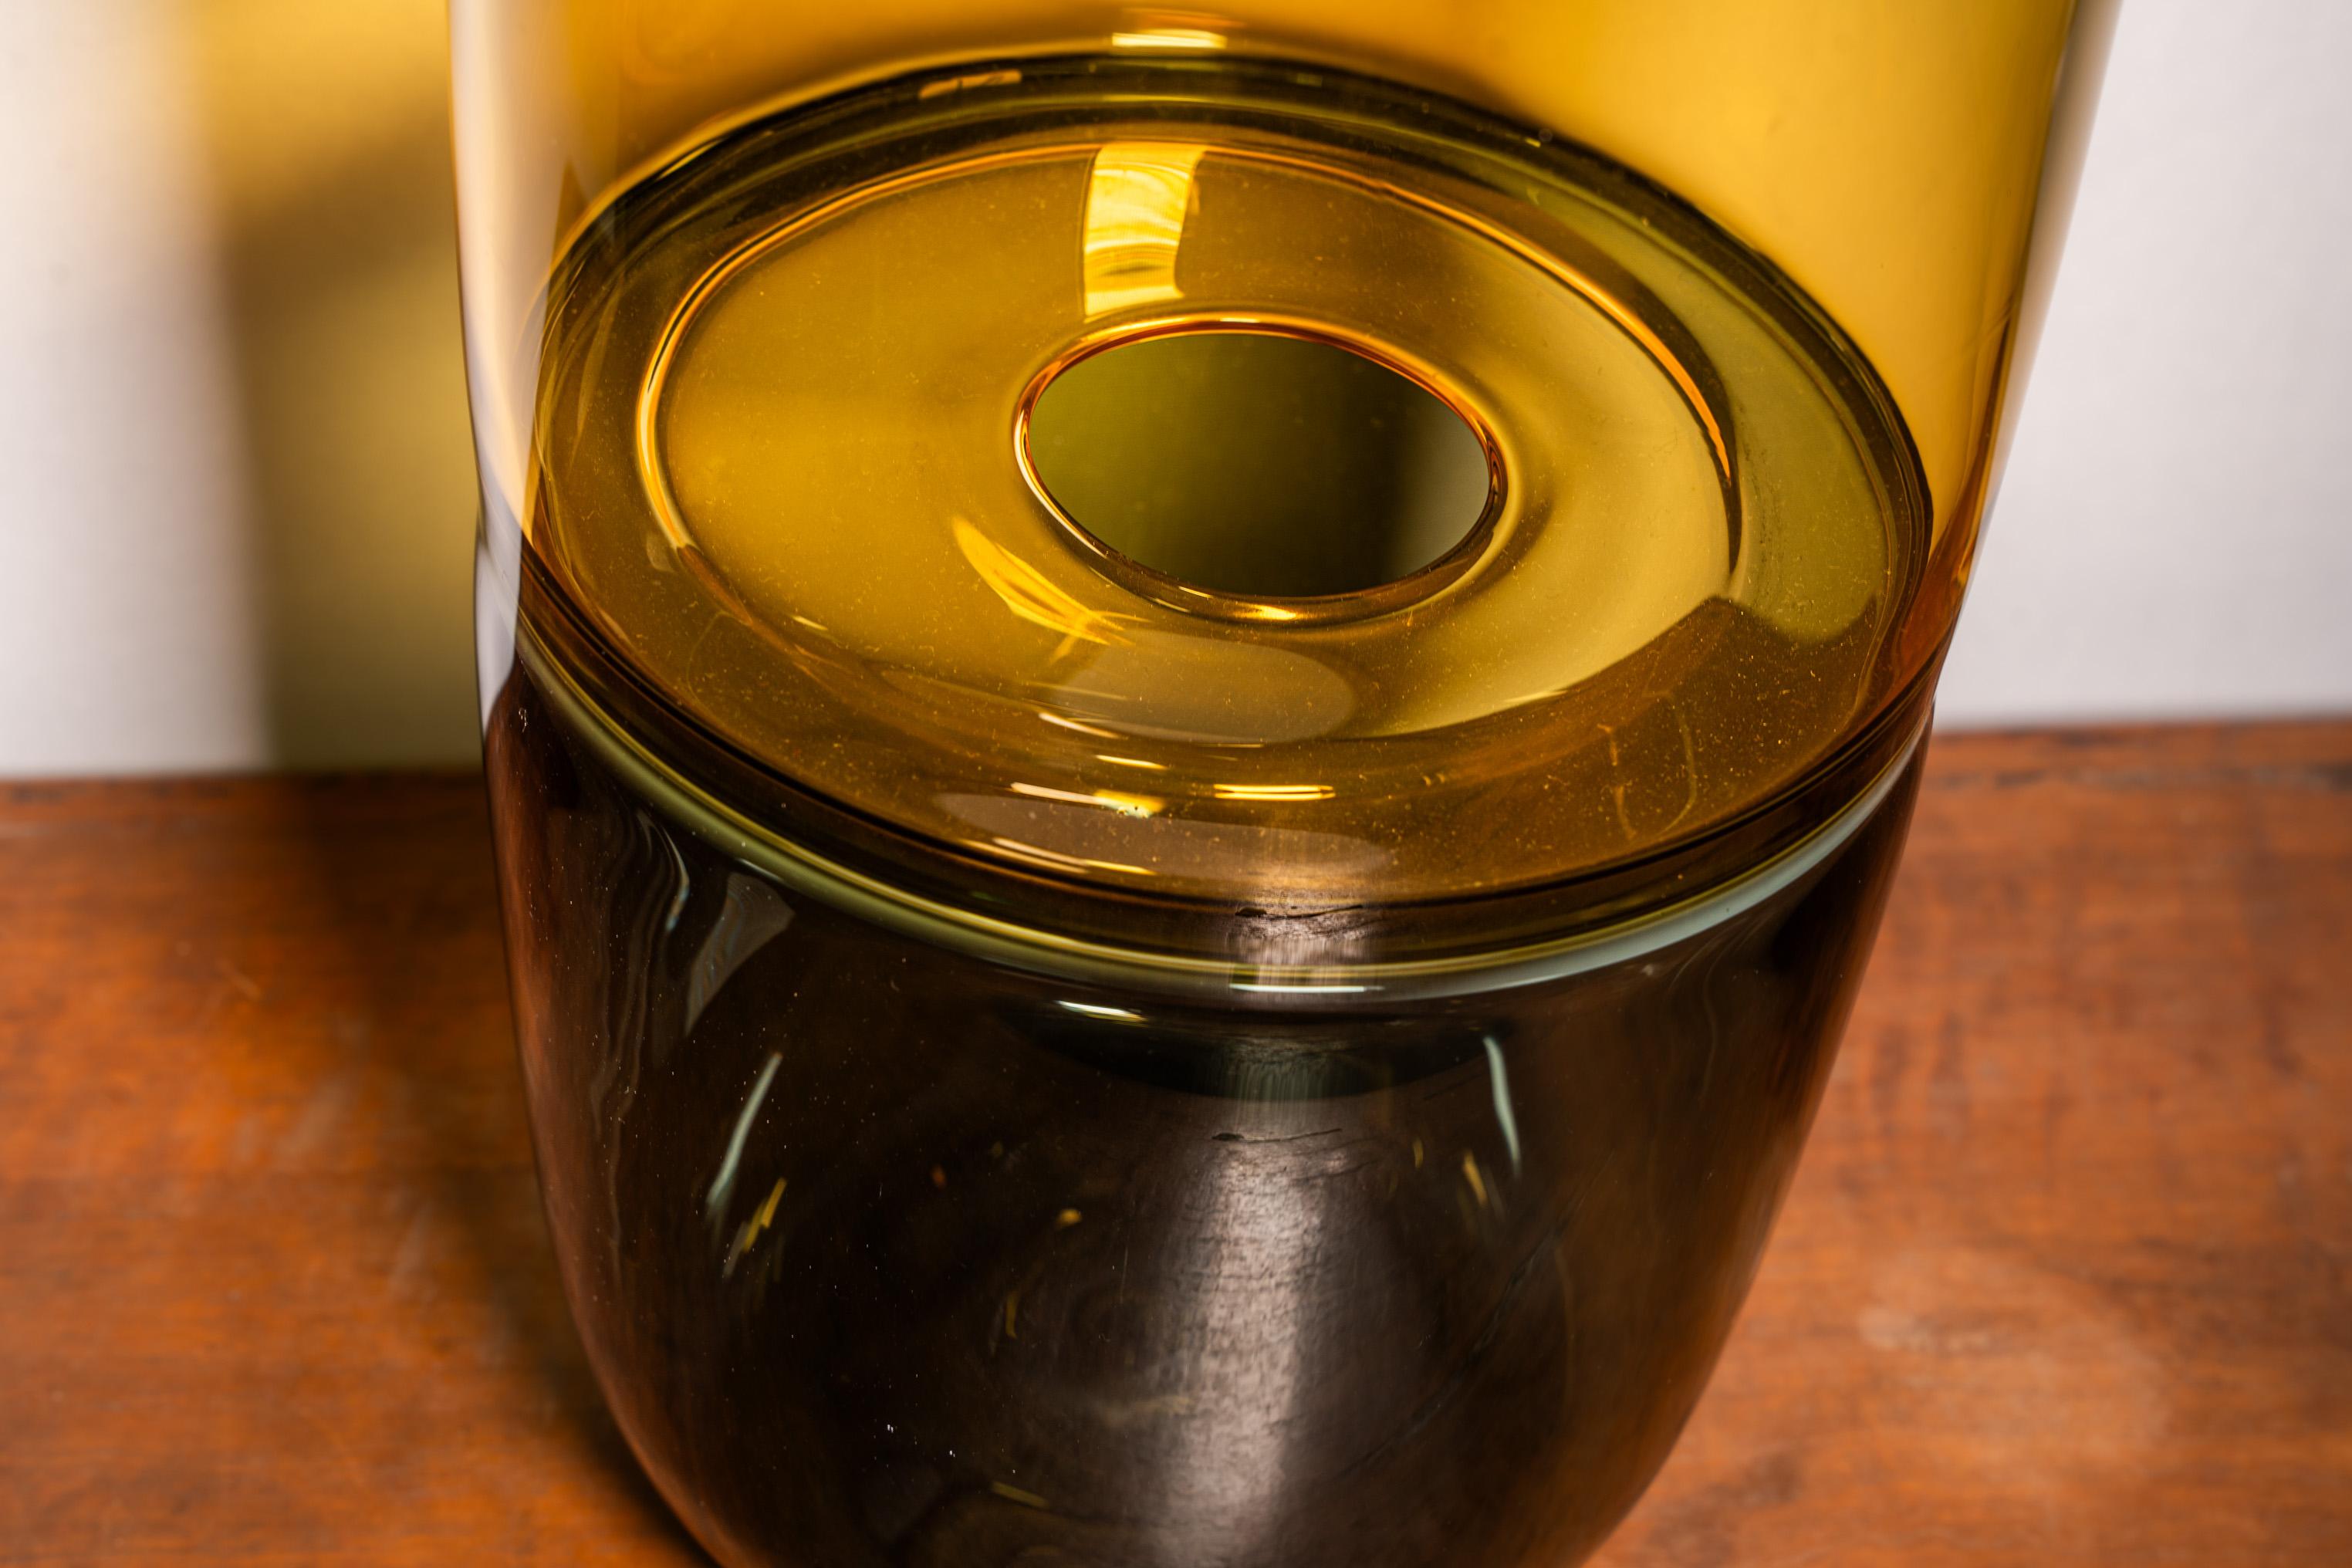 Grande vaso in vetro giallo e blu, realizzato con tecnica ad incalmo
Creato e firmato alla punta da Paolo Crepax, prodotto dalla fornace Mian a Murano, Venezia